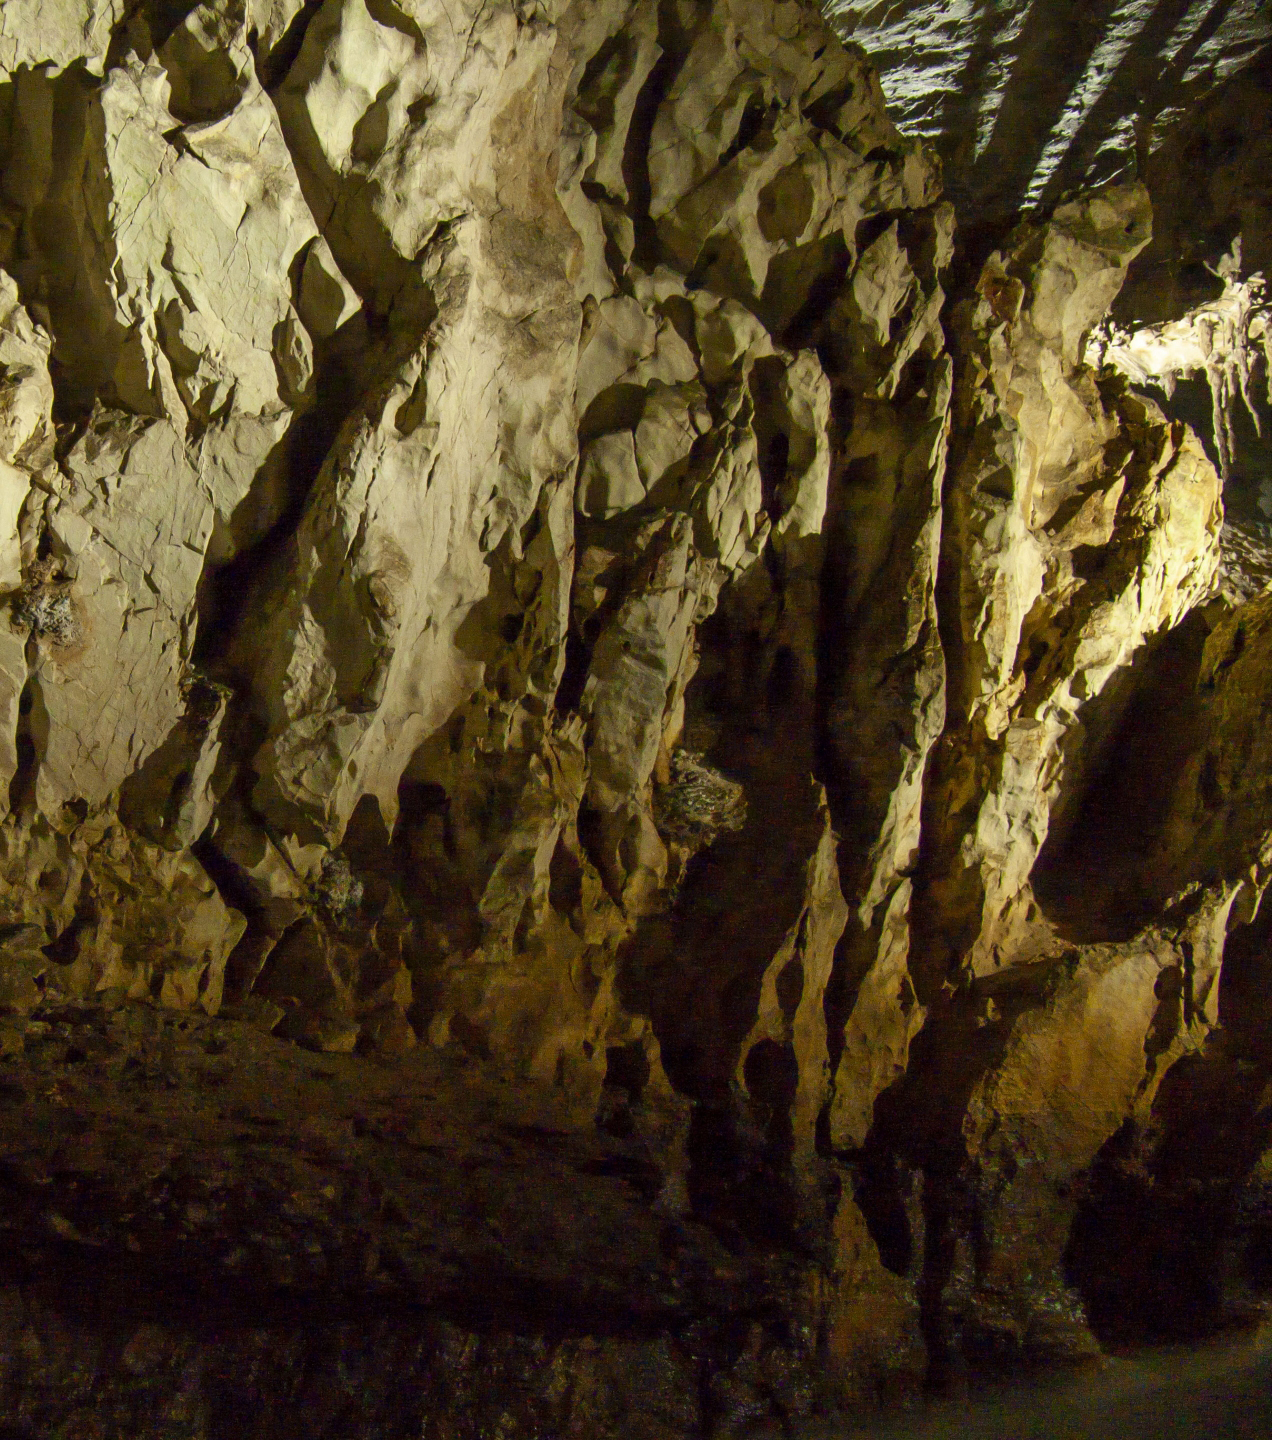 【クアンビン】世界の美しい仮想ツアー10選、ソンドン洞窟が選出